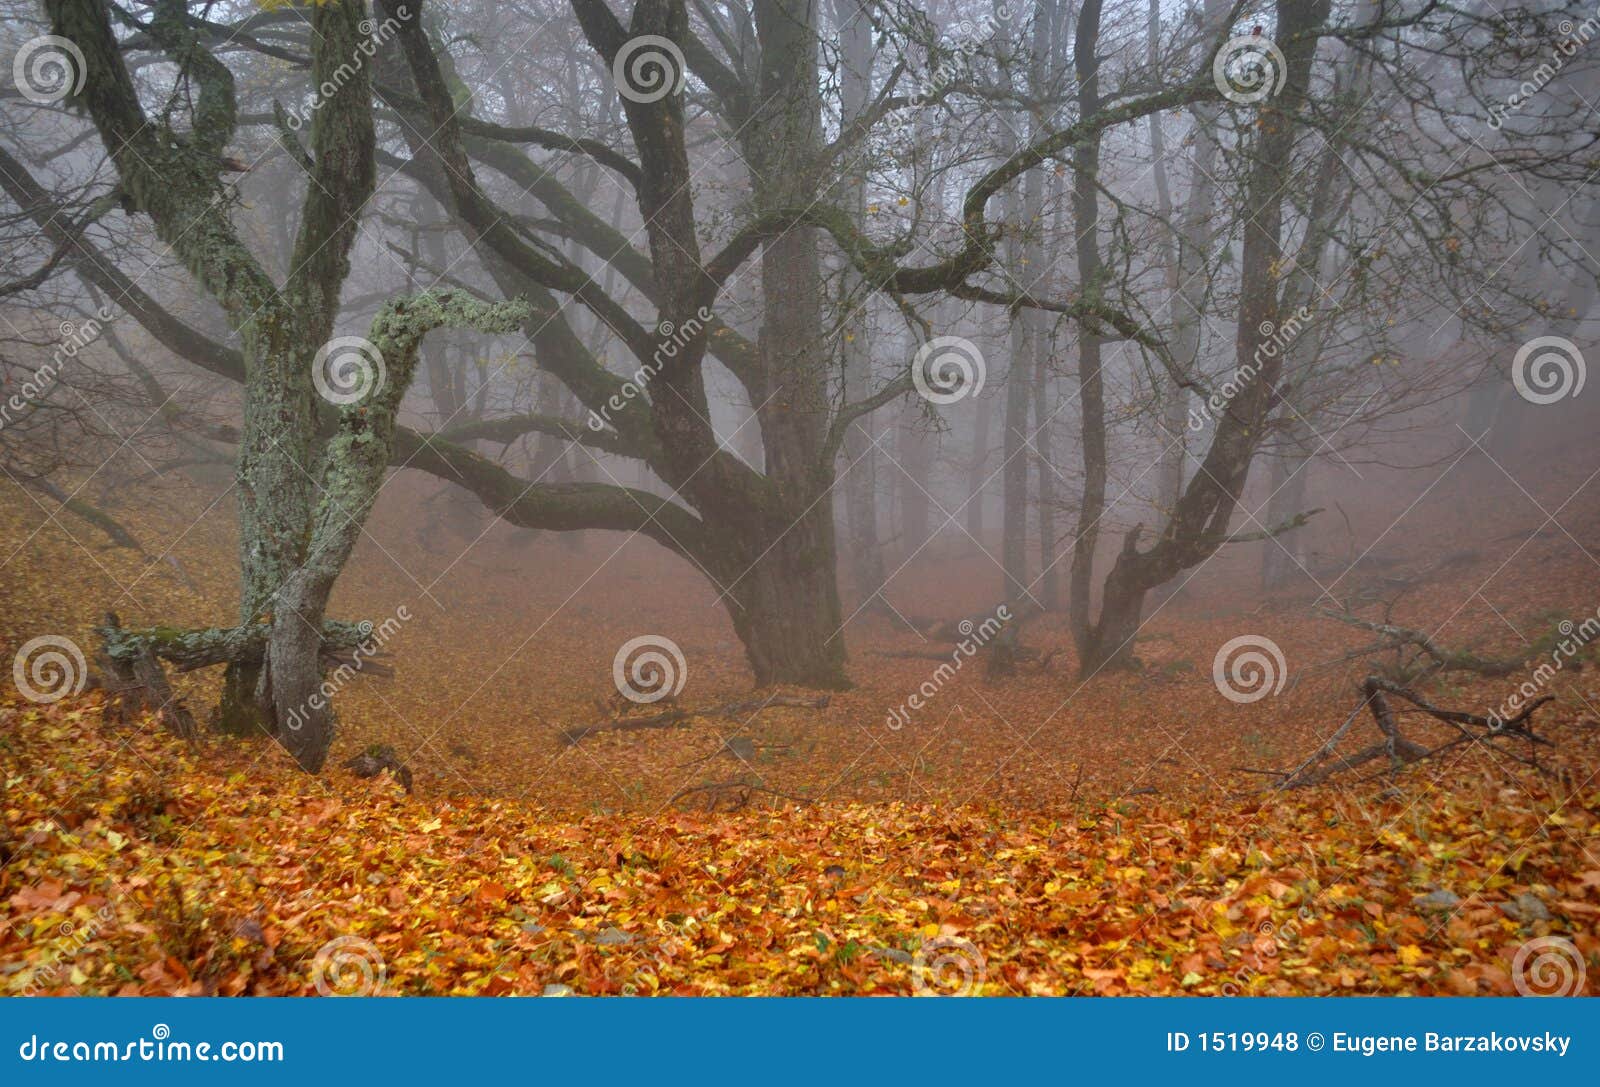 foggy ravine in autumn forest